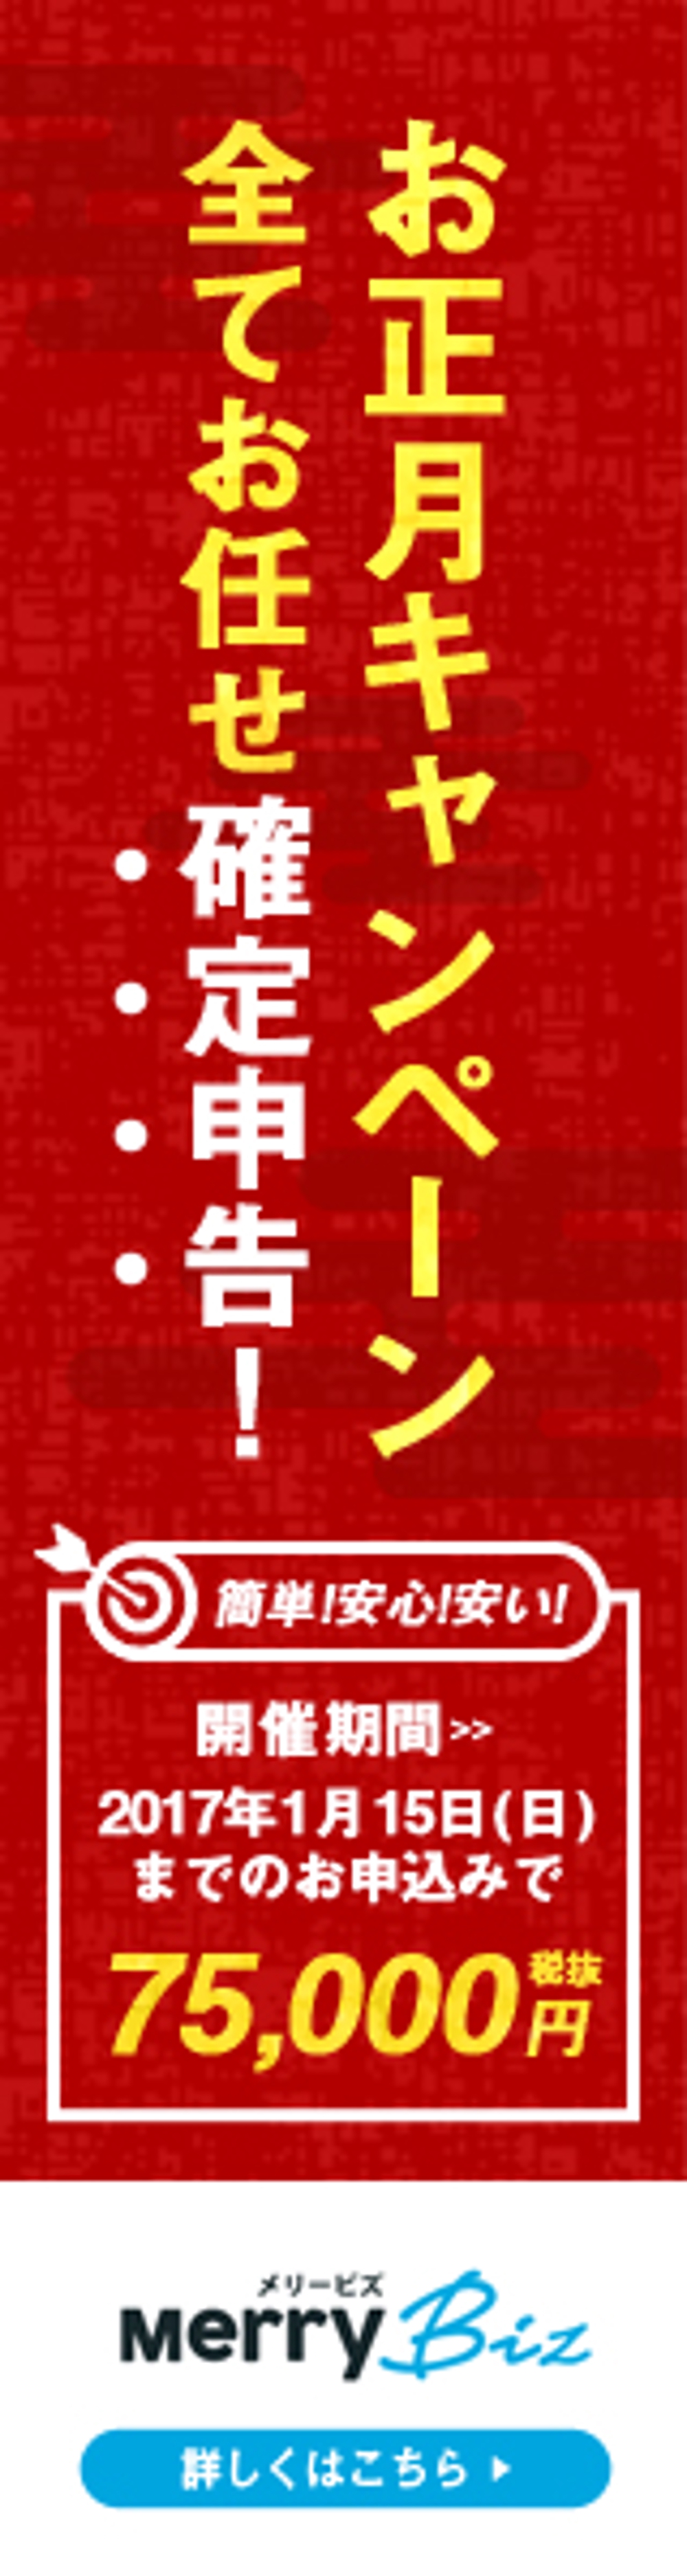 日本最安値で確定申告ができる！メリービズの「シンプル確定申告」お正月キャンペーン用バナー制作